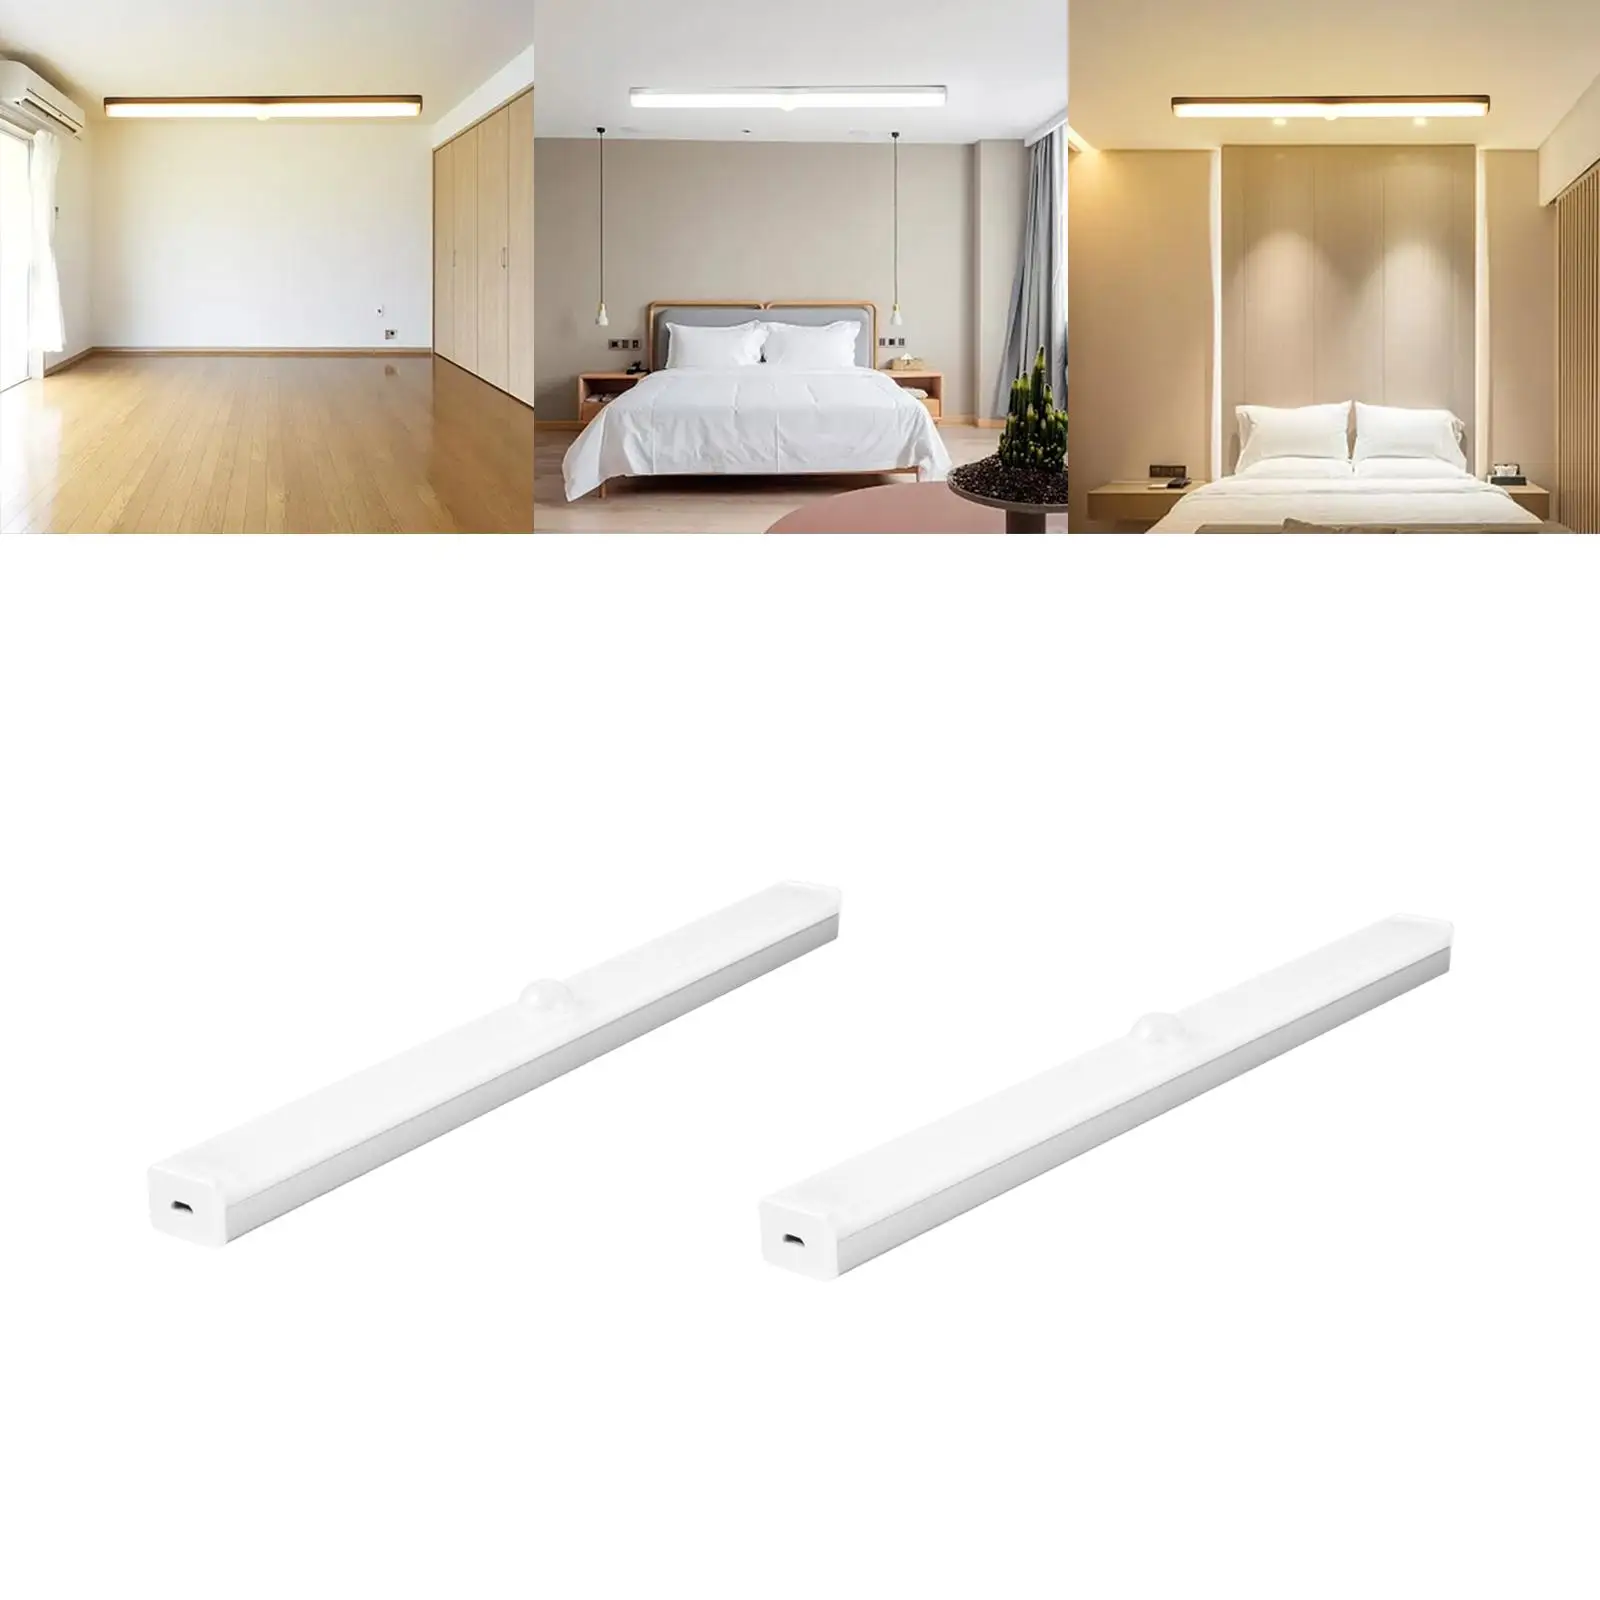 Body Sensor Lights Home Dimming LED Under Cabinet Lighting Lights Strip Bar for Desk Wardrobe Display Case Room Living Room